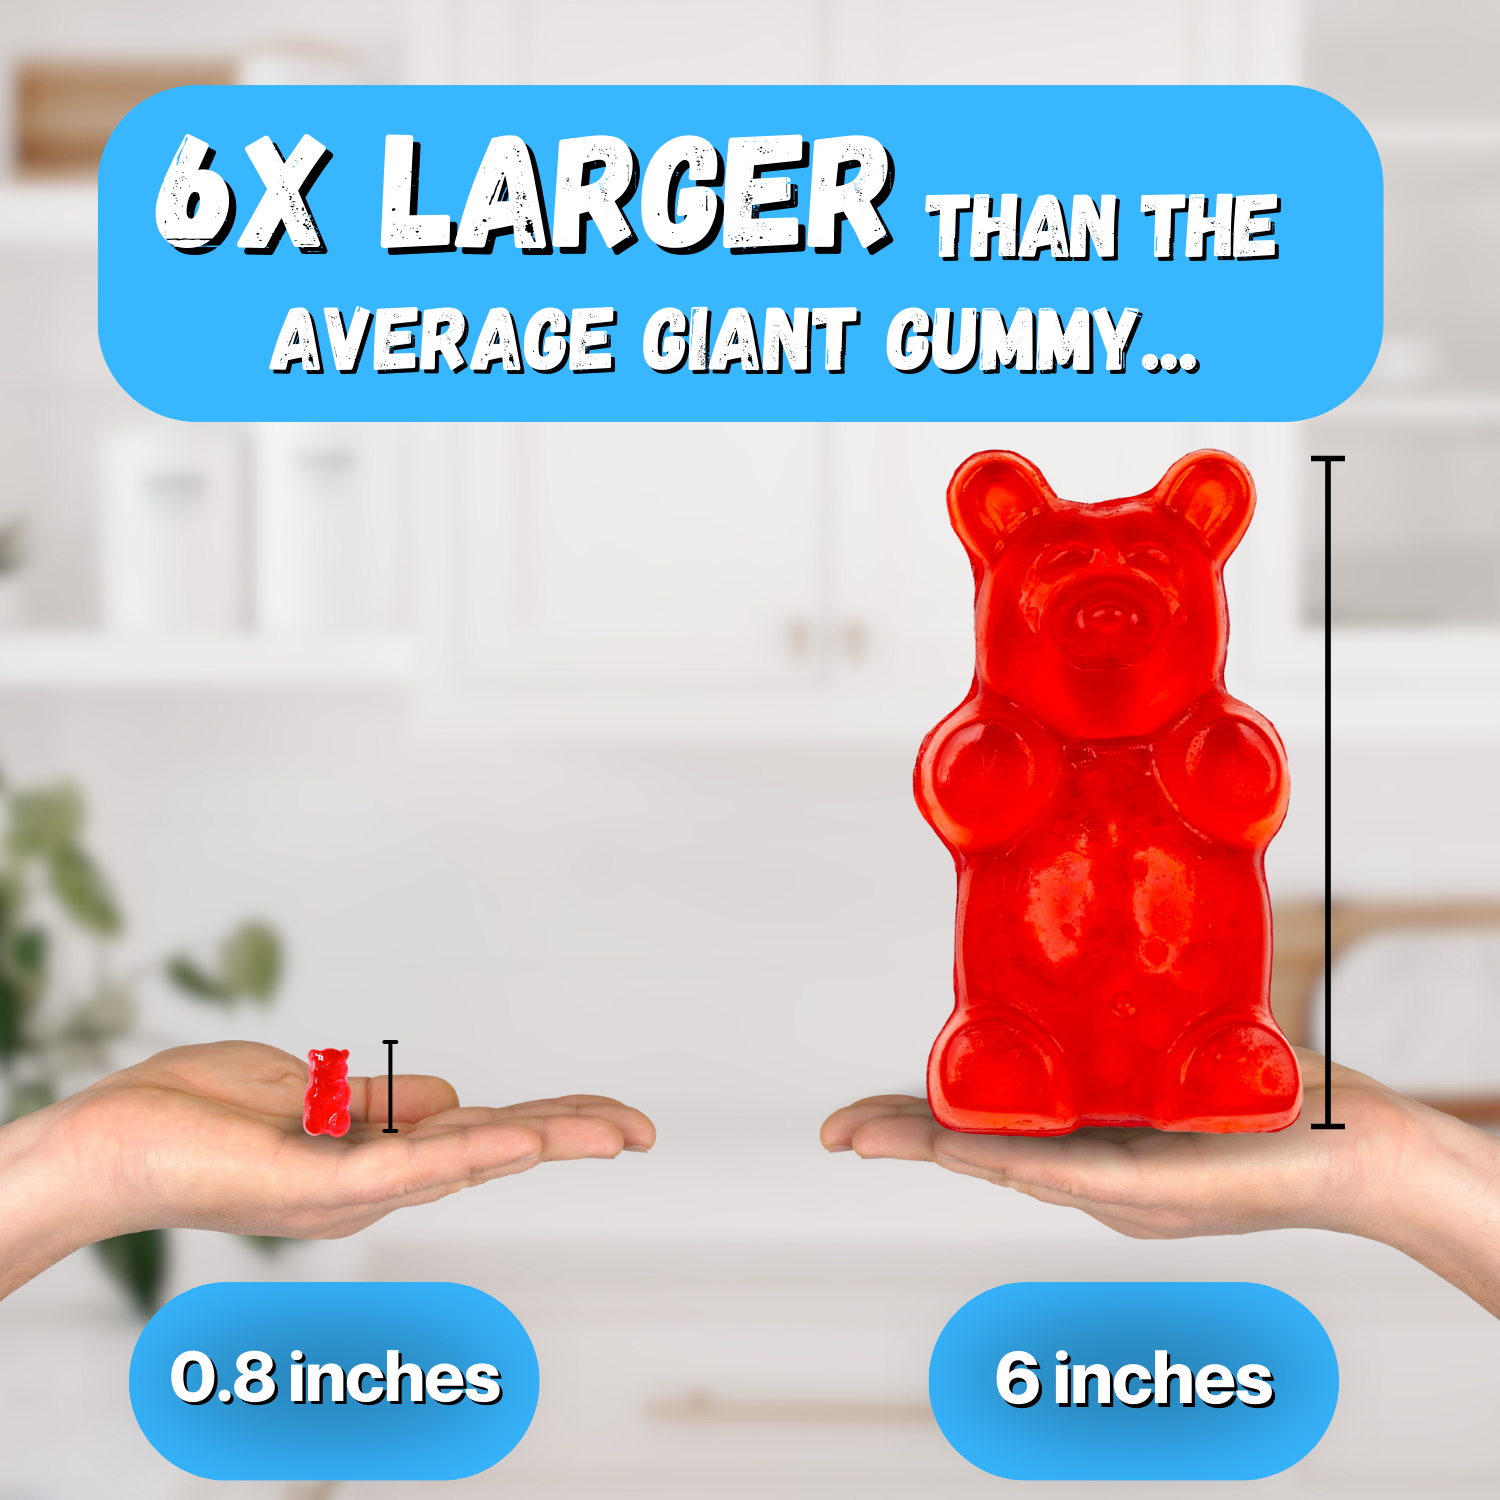 Giant Gummy Soda Pop - 5oz